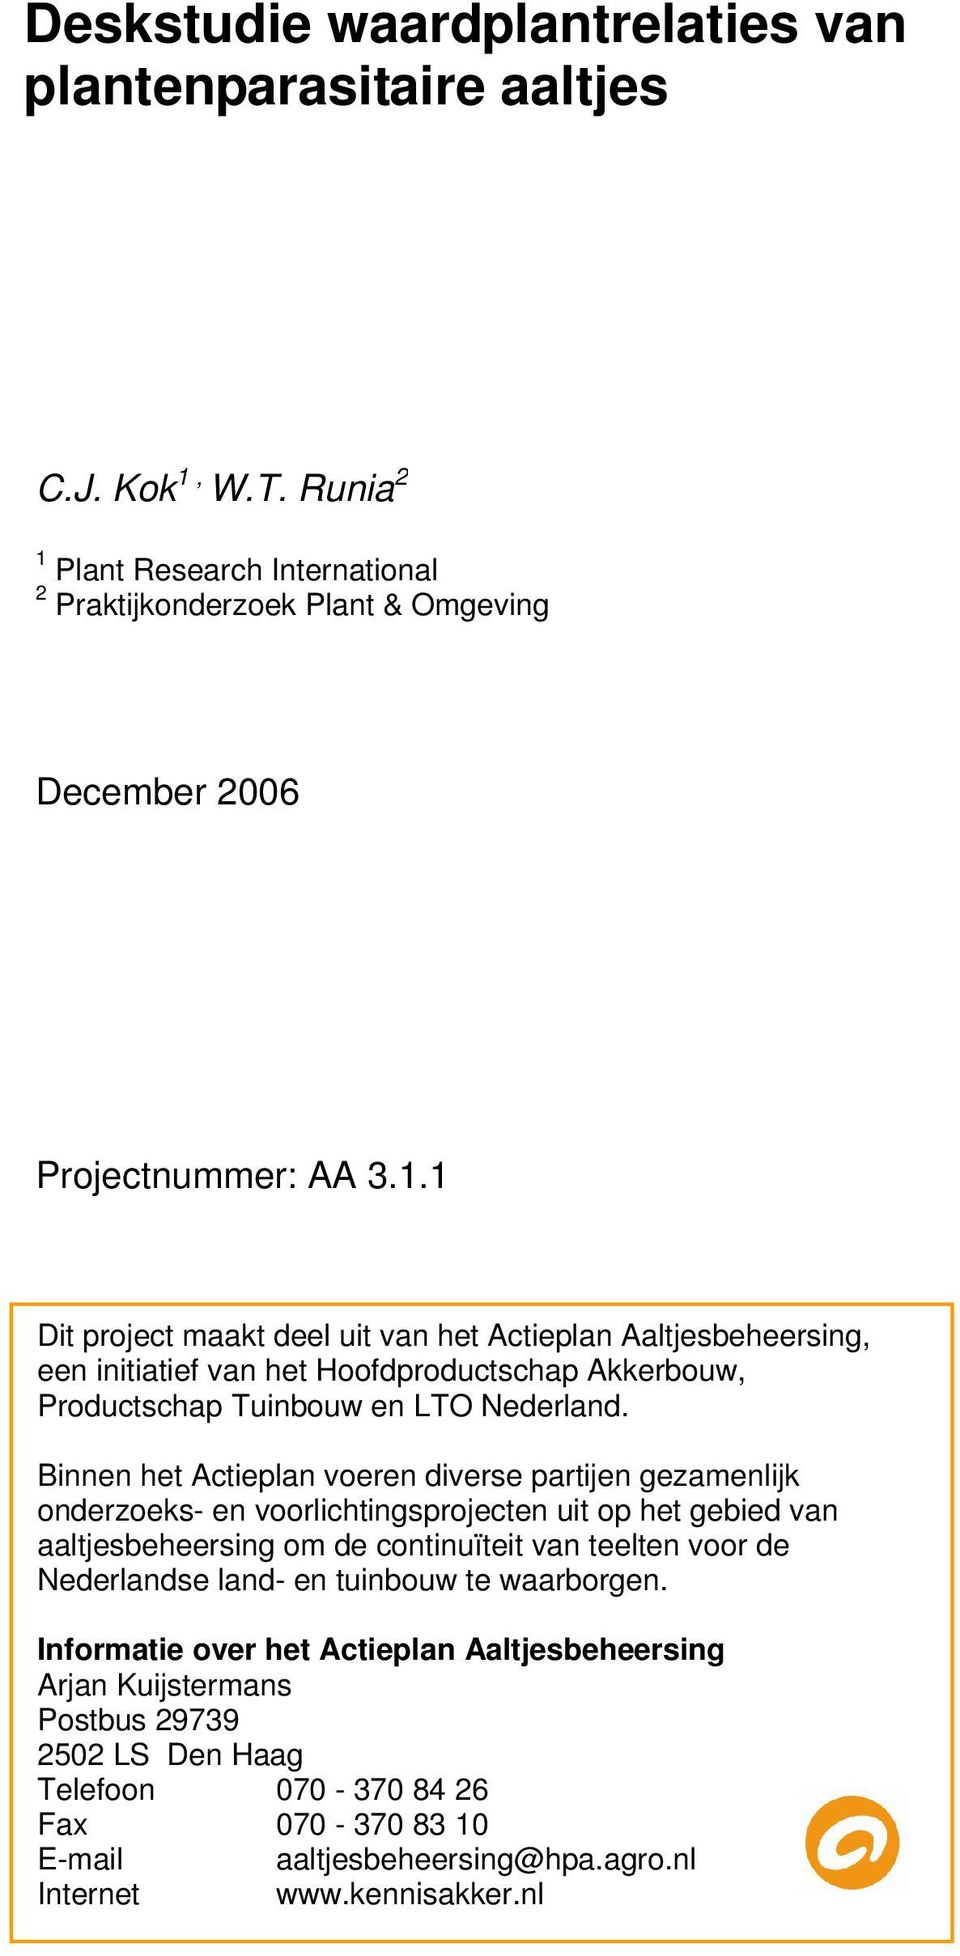 Binnen het Actieplan voeren diverse partijen gezamenlijk onderzoeks- en voorlichtingsprojecten uit op het gebied van aaltjesbeheersing om de continuïteit van teelten voor de Nederlandse land-